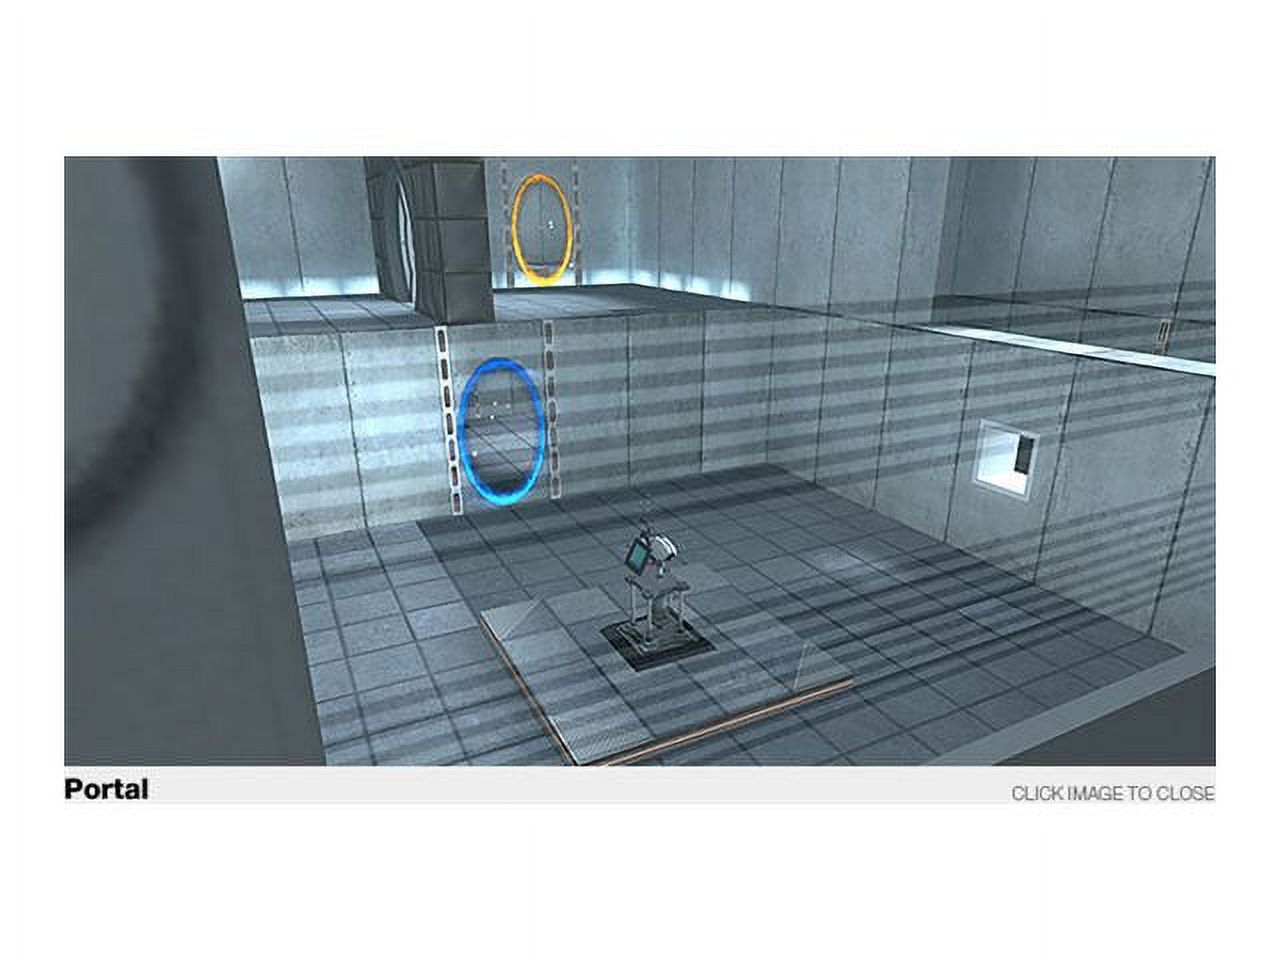 EA Portal 2 - image 2 of 9